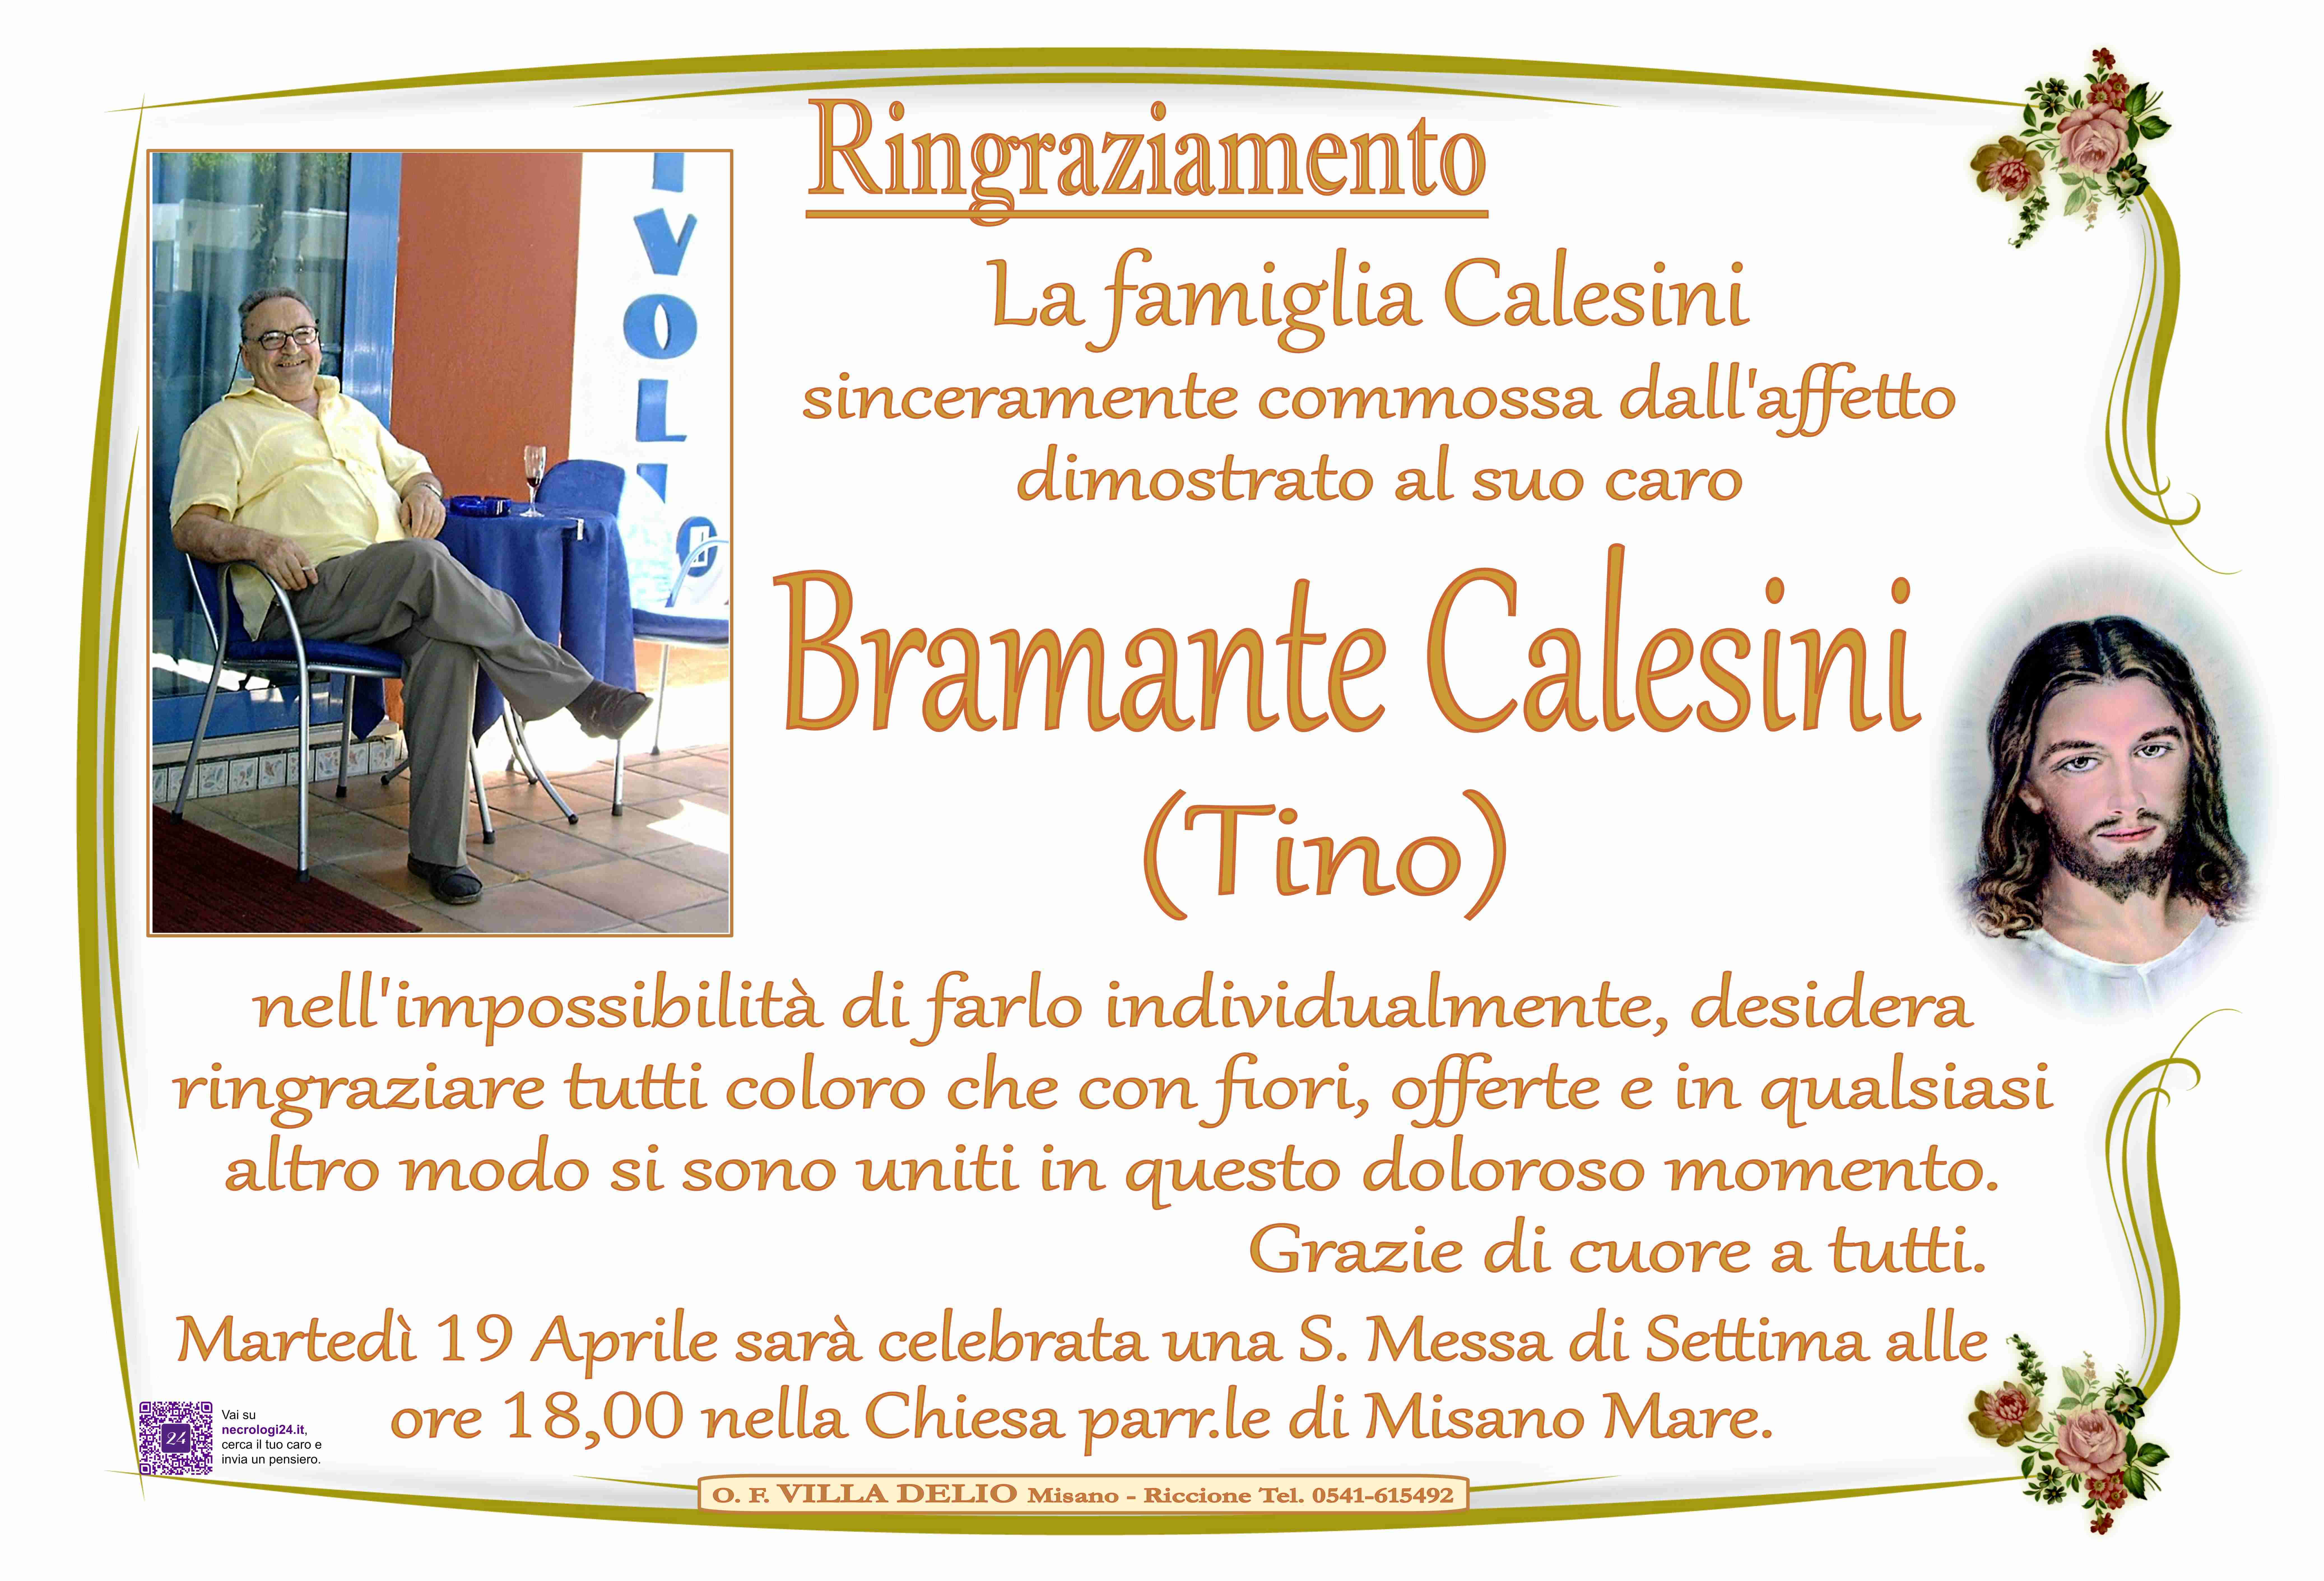 Bramante Calesini